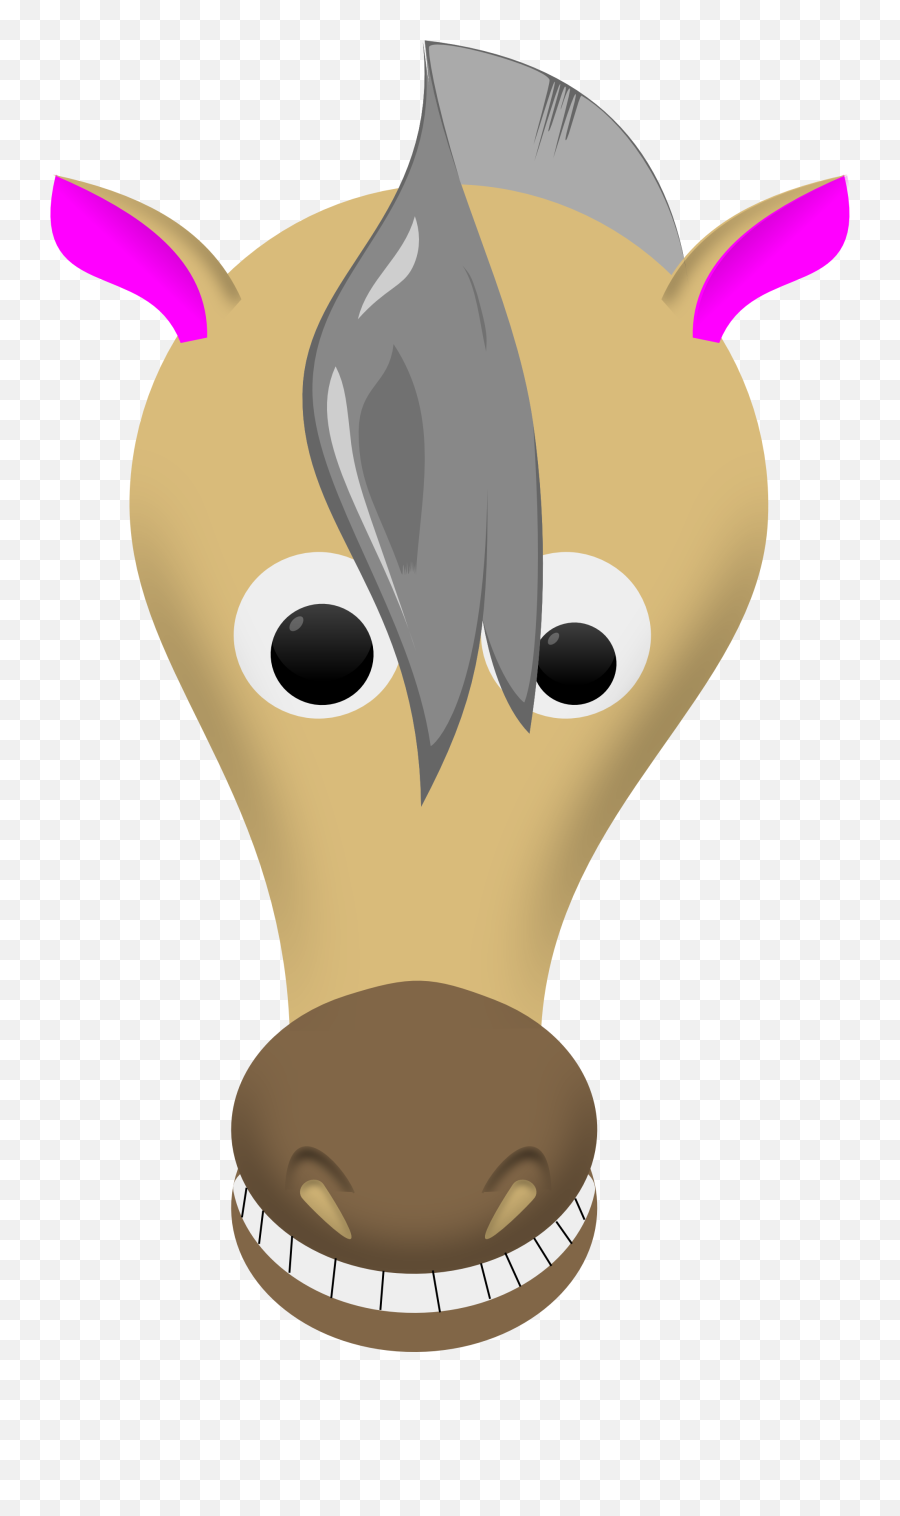 Clip Art Horse Face - Cartoon Horse Face Printable Emoji,Horse Head Clipart